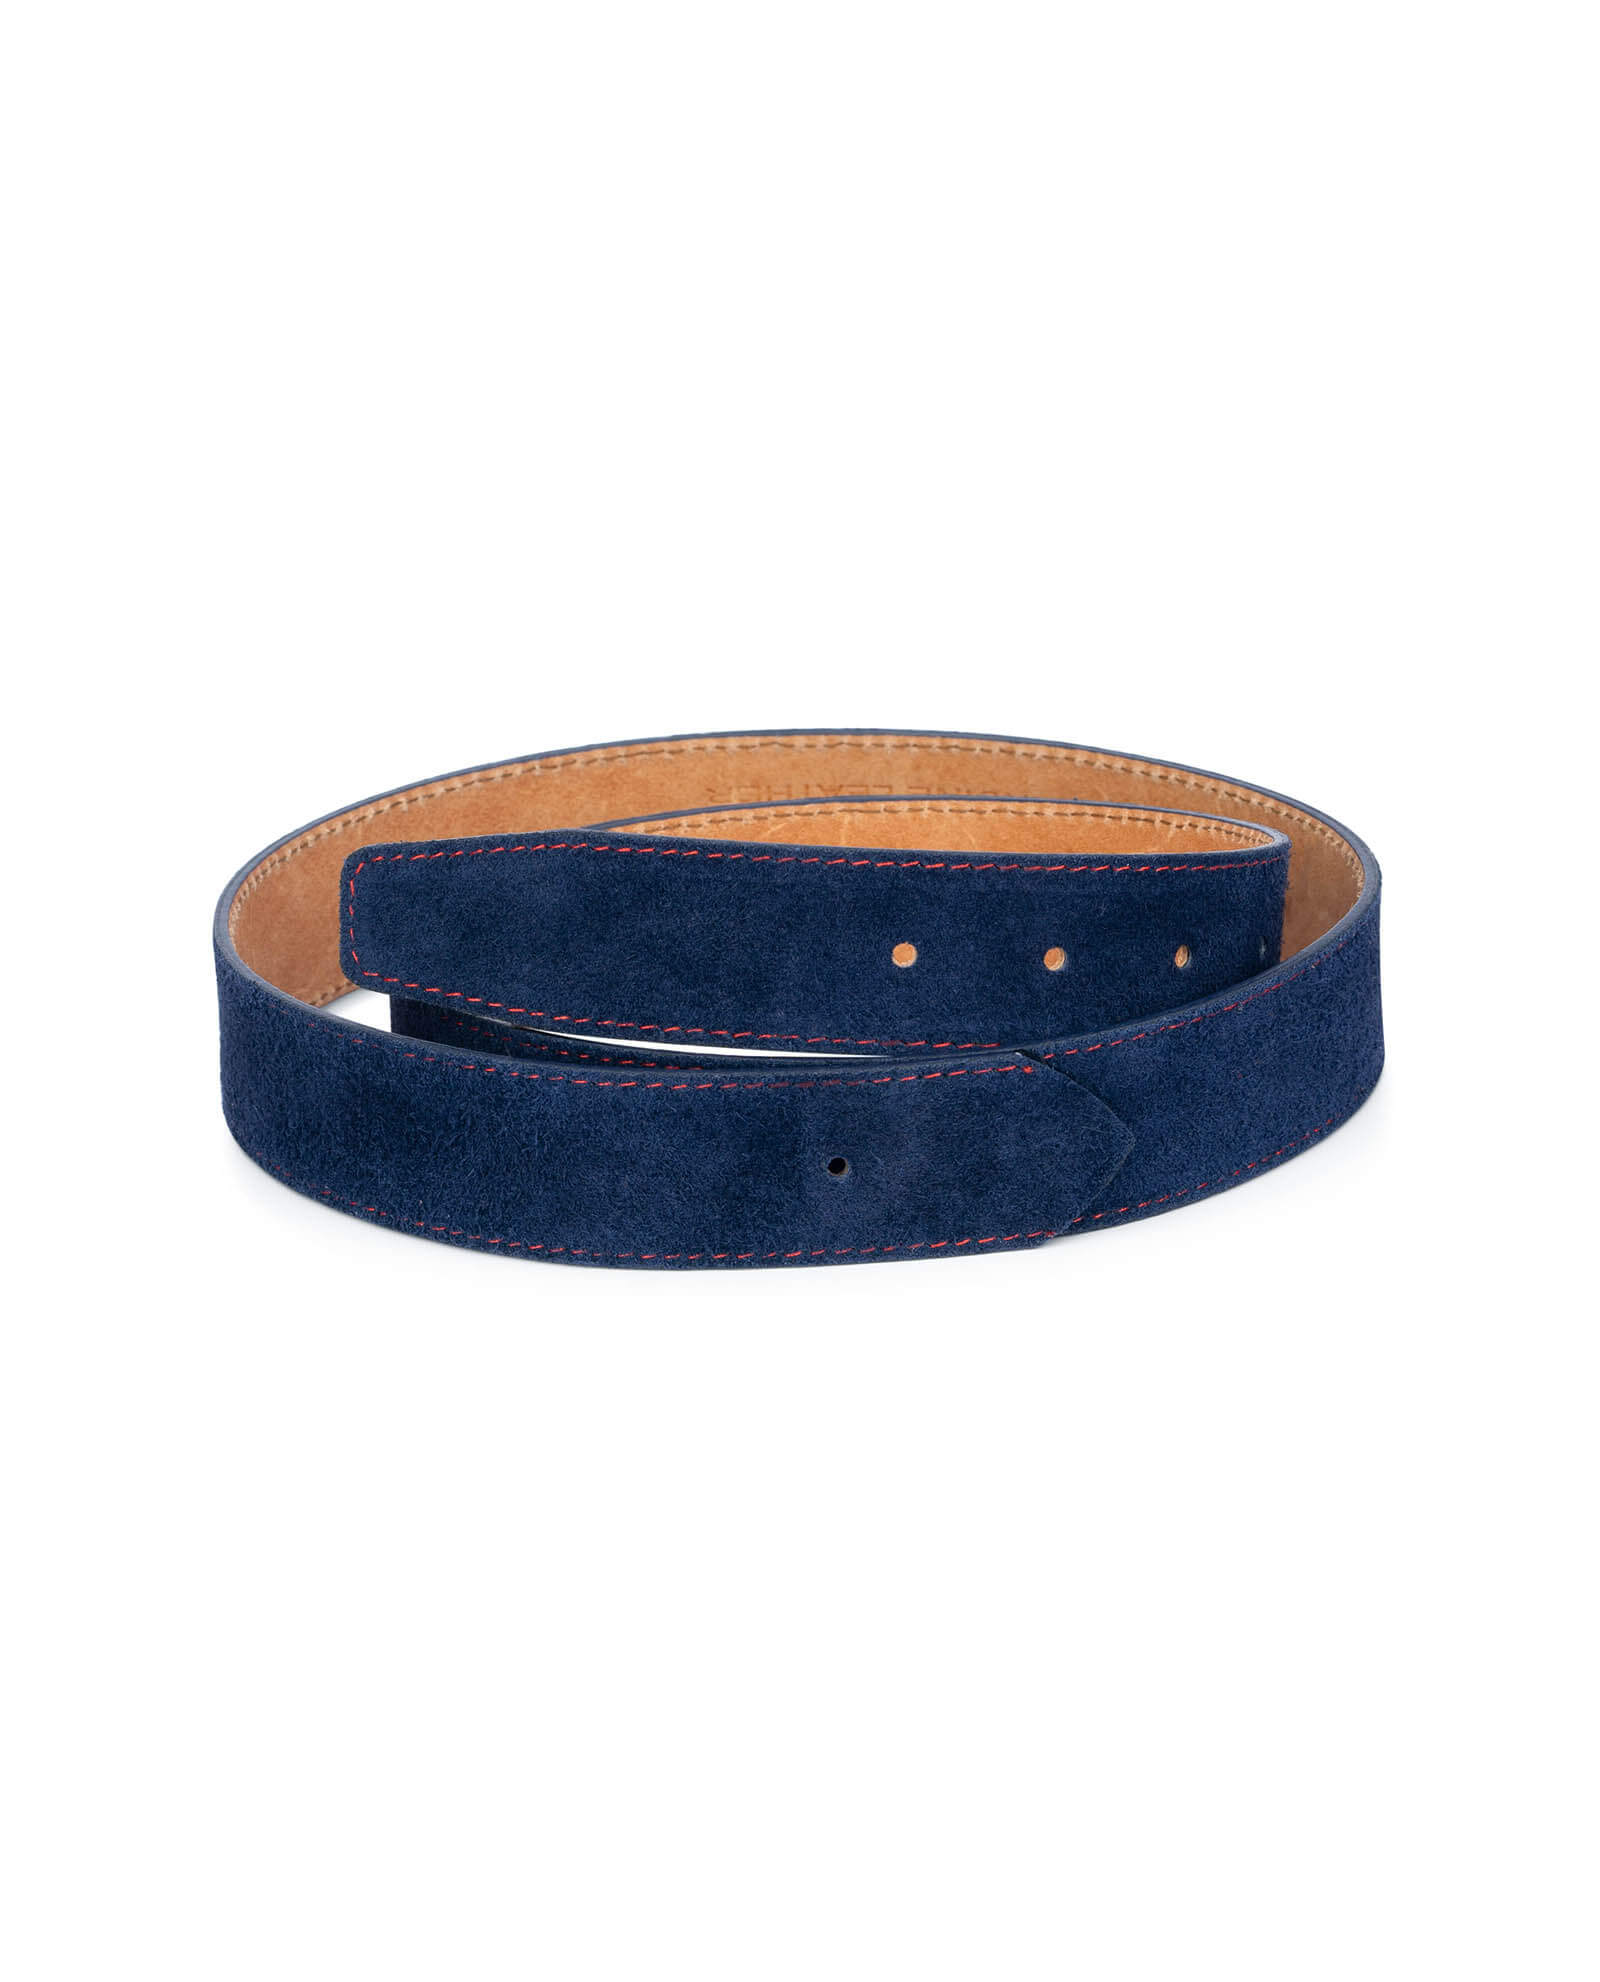 Buy Suede Blue Belt Strap Red Stitch | LeatherBeltsOnline.com